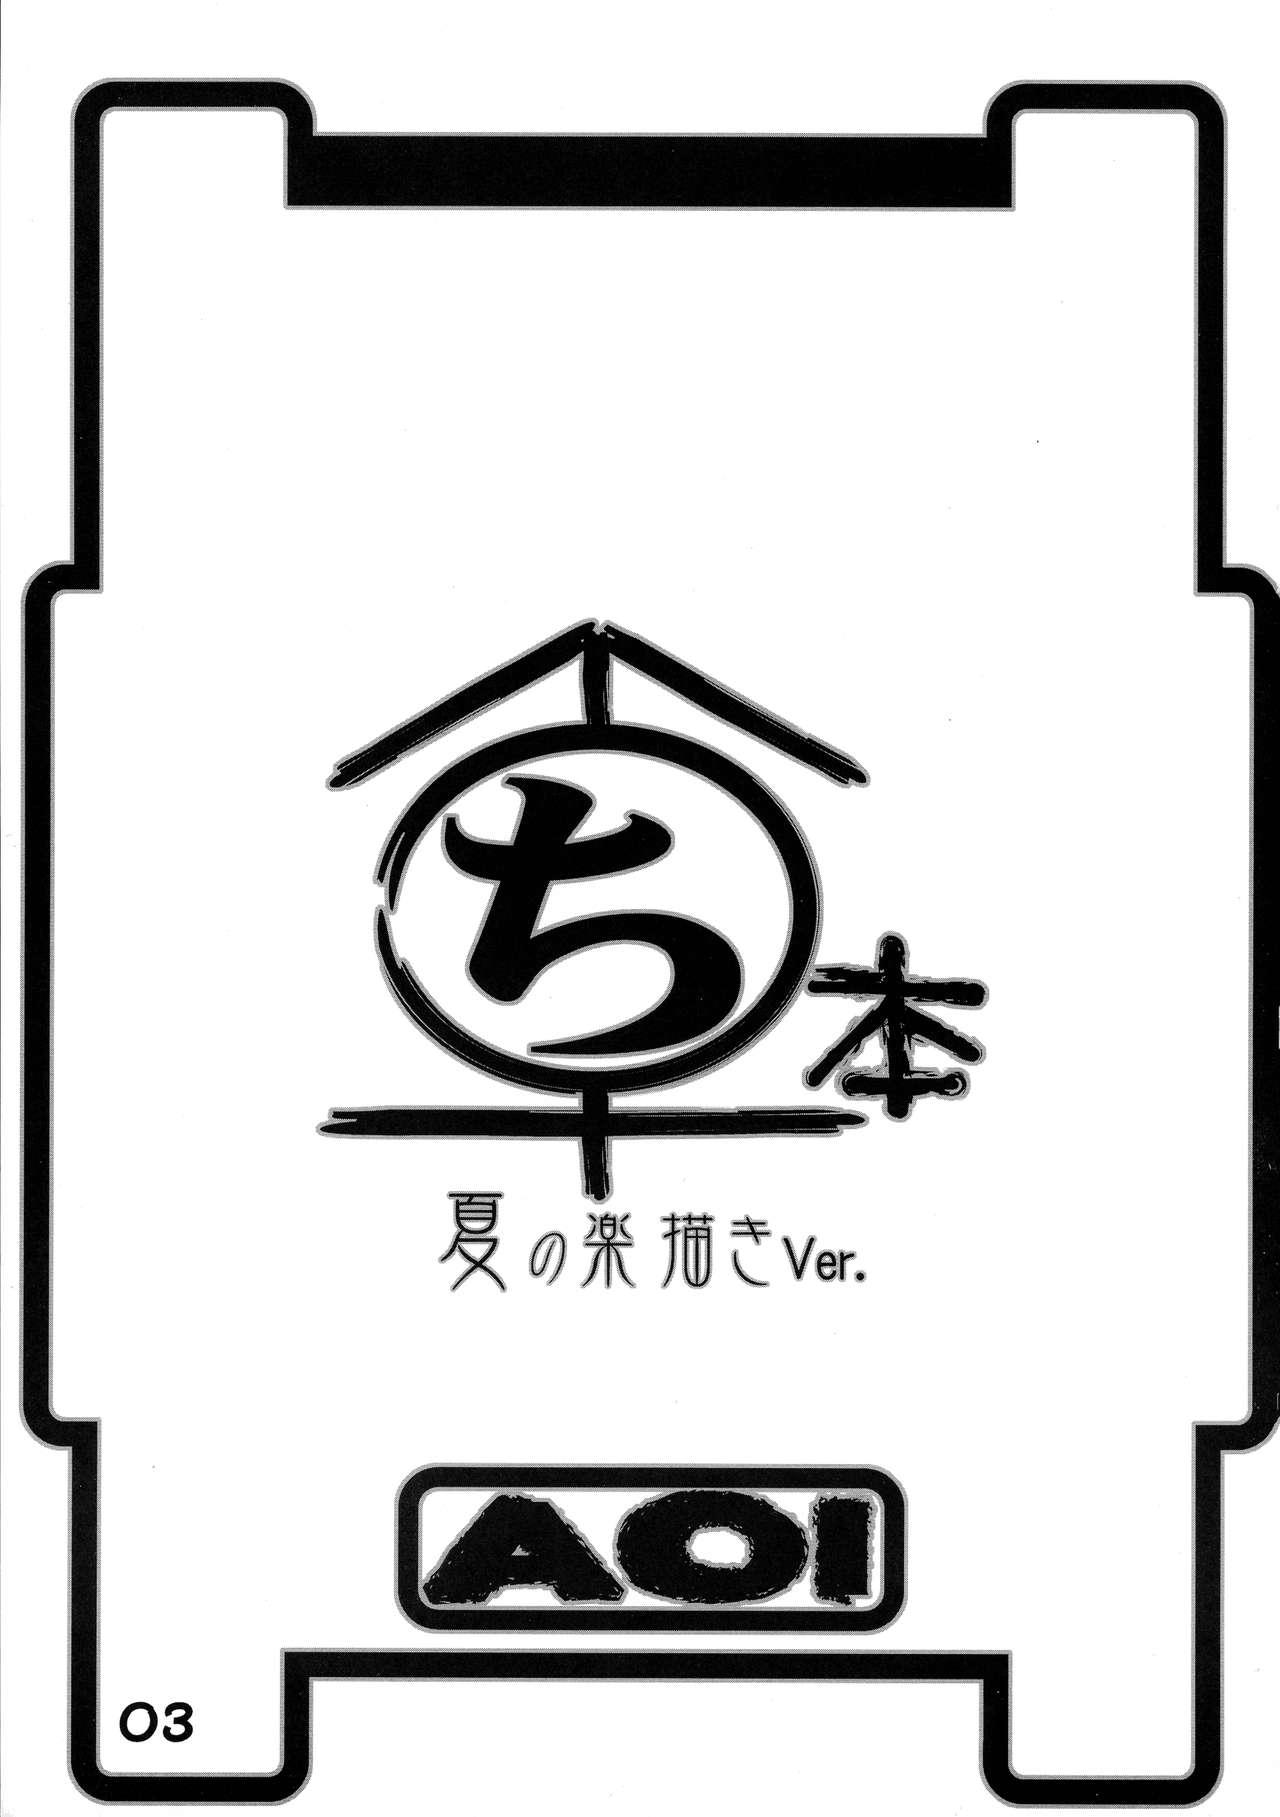 Maruchibon Natsu no Rakugaki Ver. 2